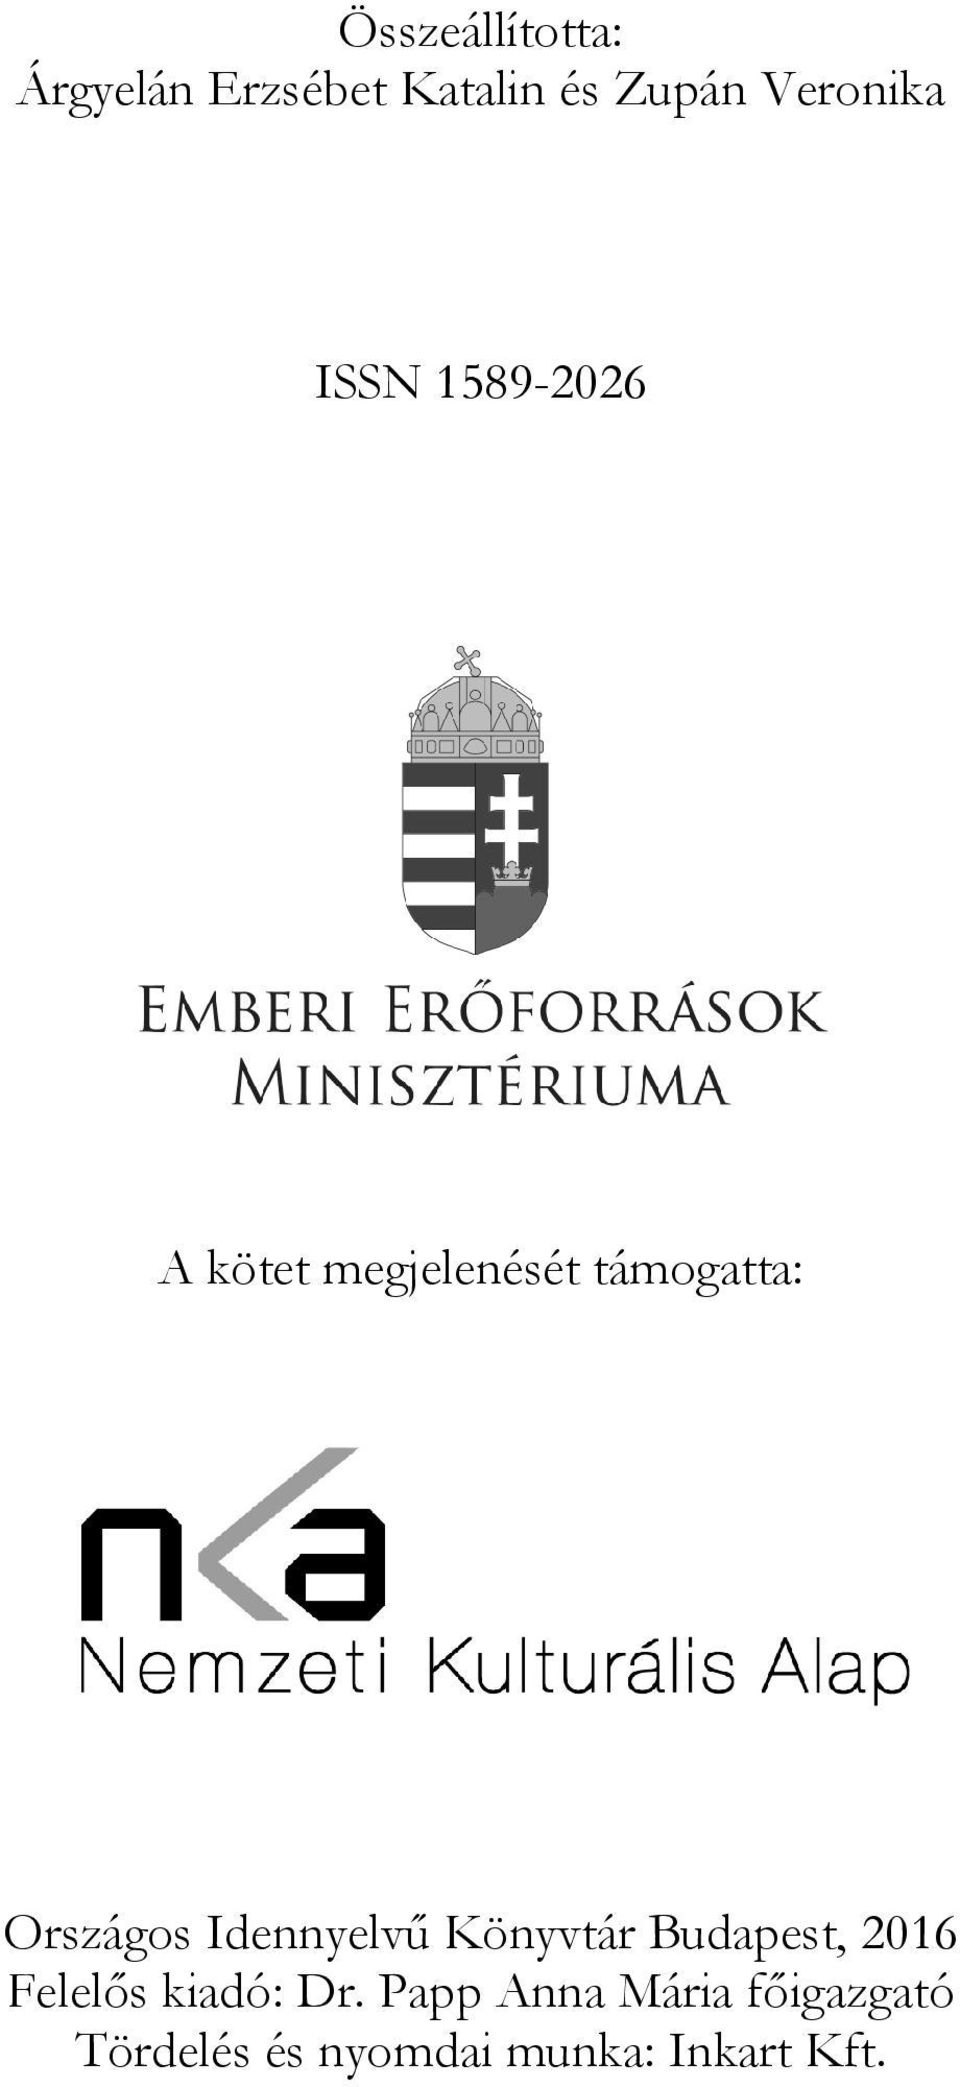 Országos Idennyelvű Könyvtár Budapest, 2016 Felelős kiadó: